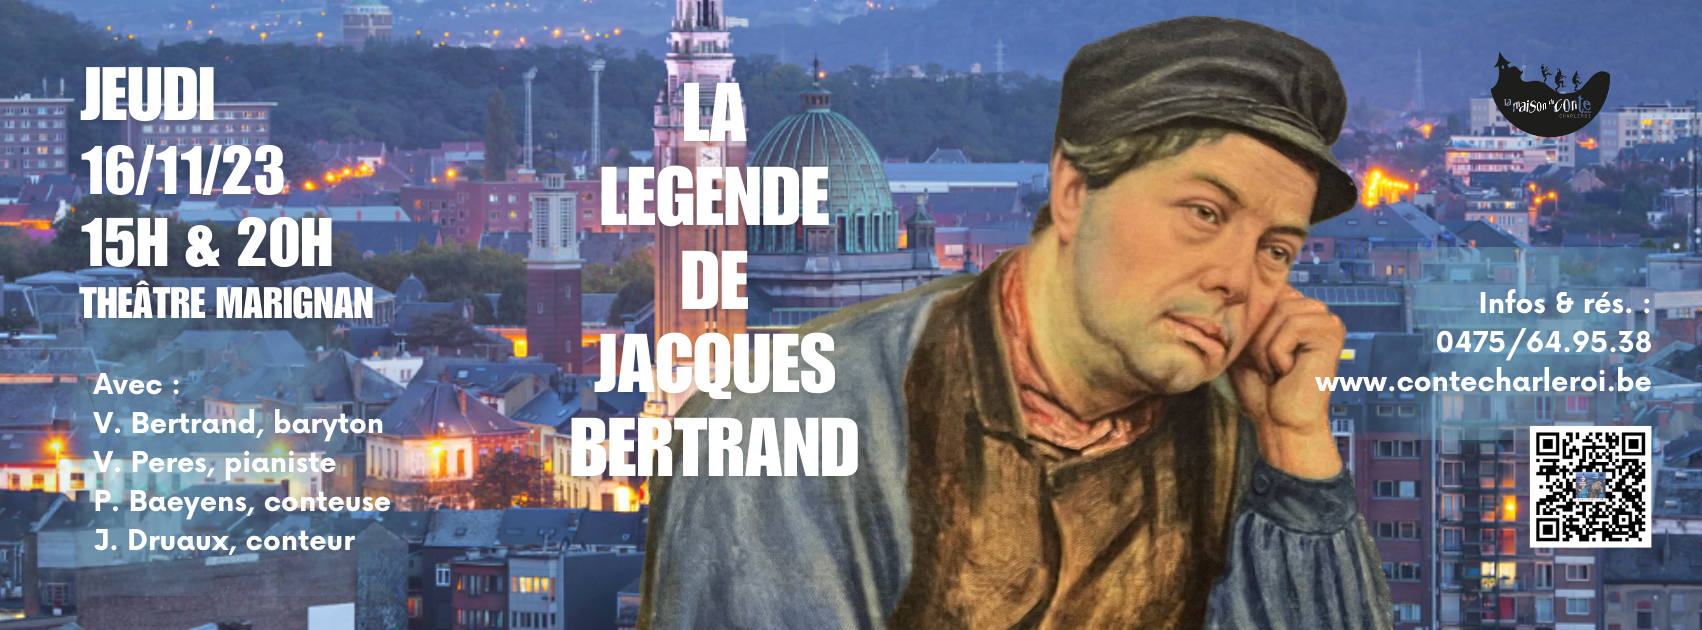 La légende de Jacques Bertrand